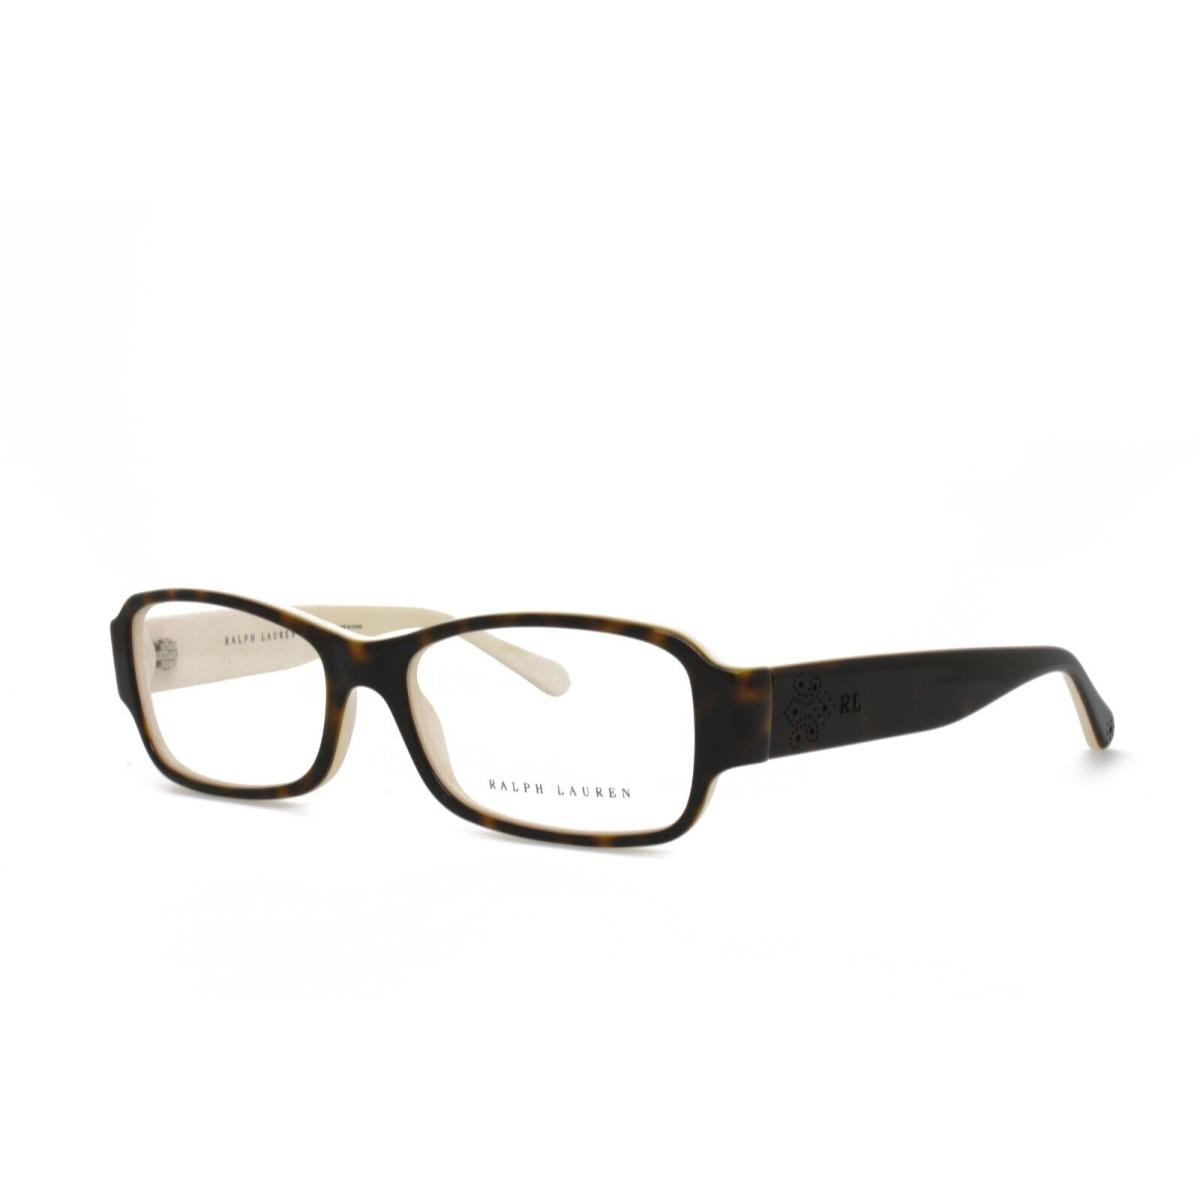 Ralph Lauren 6110 5451 53-16-135 Brown Tortoise Eyeglasses Frames